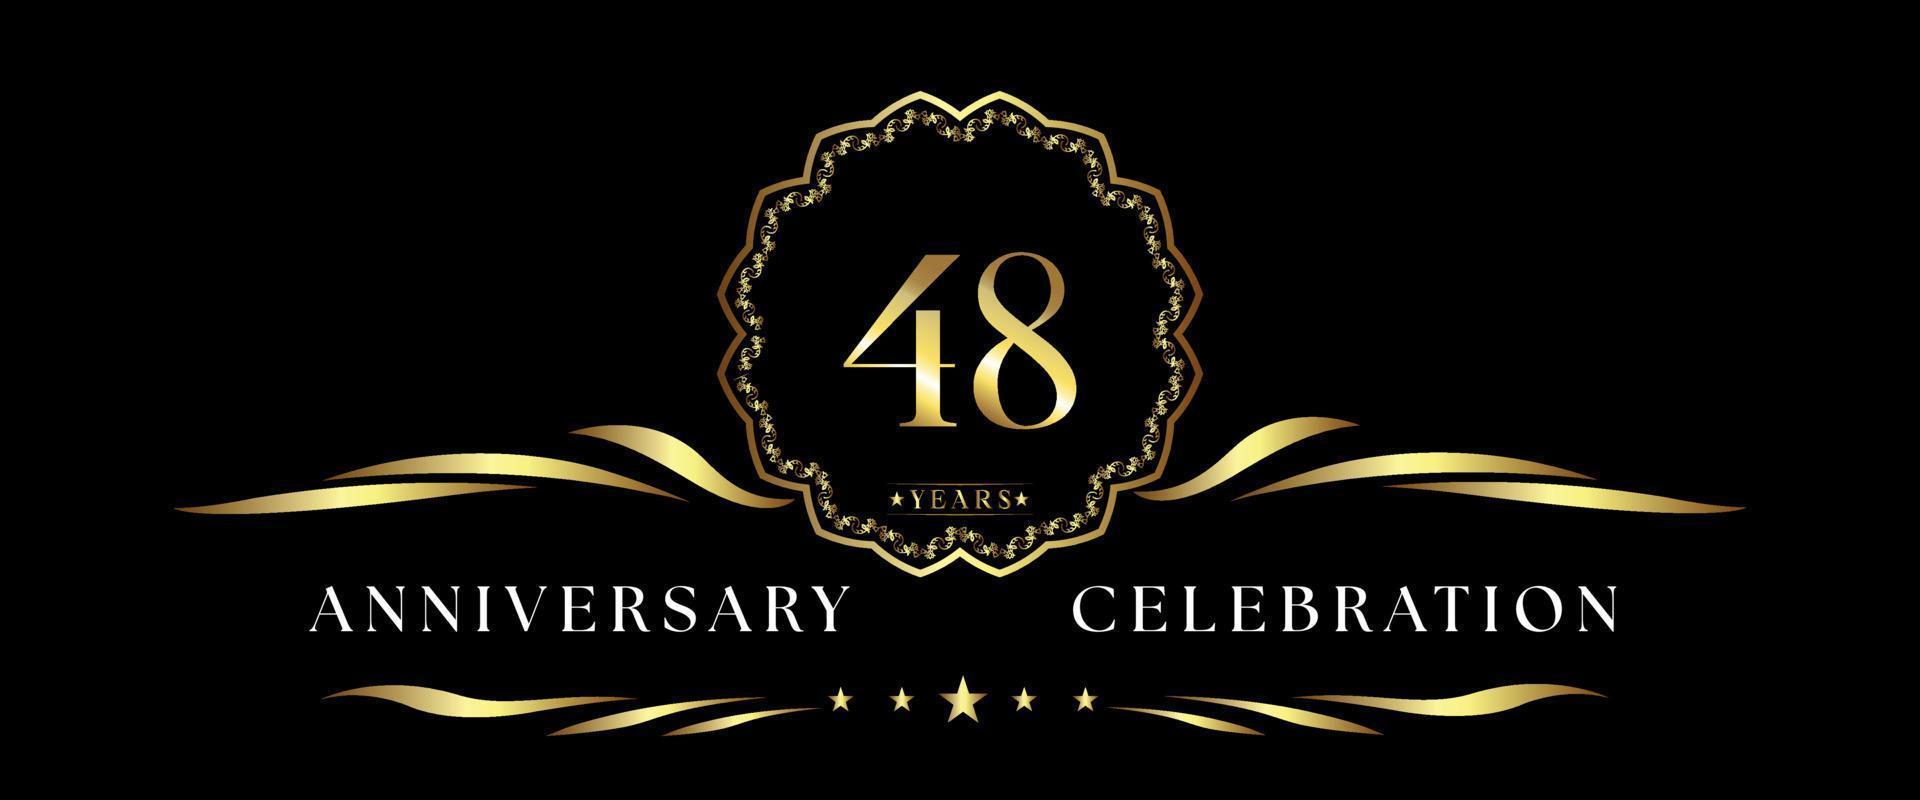 Celebración del aniversario de 48 años con marco decorativo dorado aislado en fondo negro. diseño vectorial para tarjetas de felicitación, fiesta de cumpleaños, boda, fiesta de eventos, ceremonia. Logotipo de aniversario de 48 años. vector